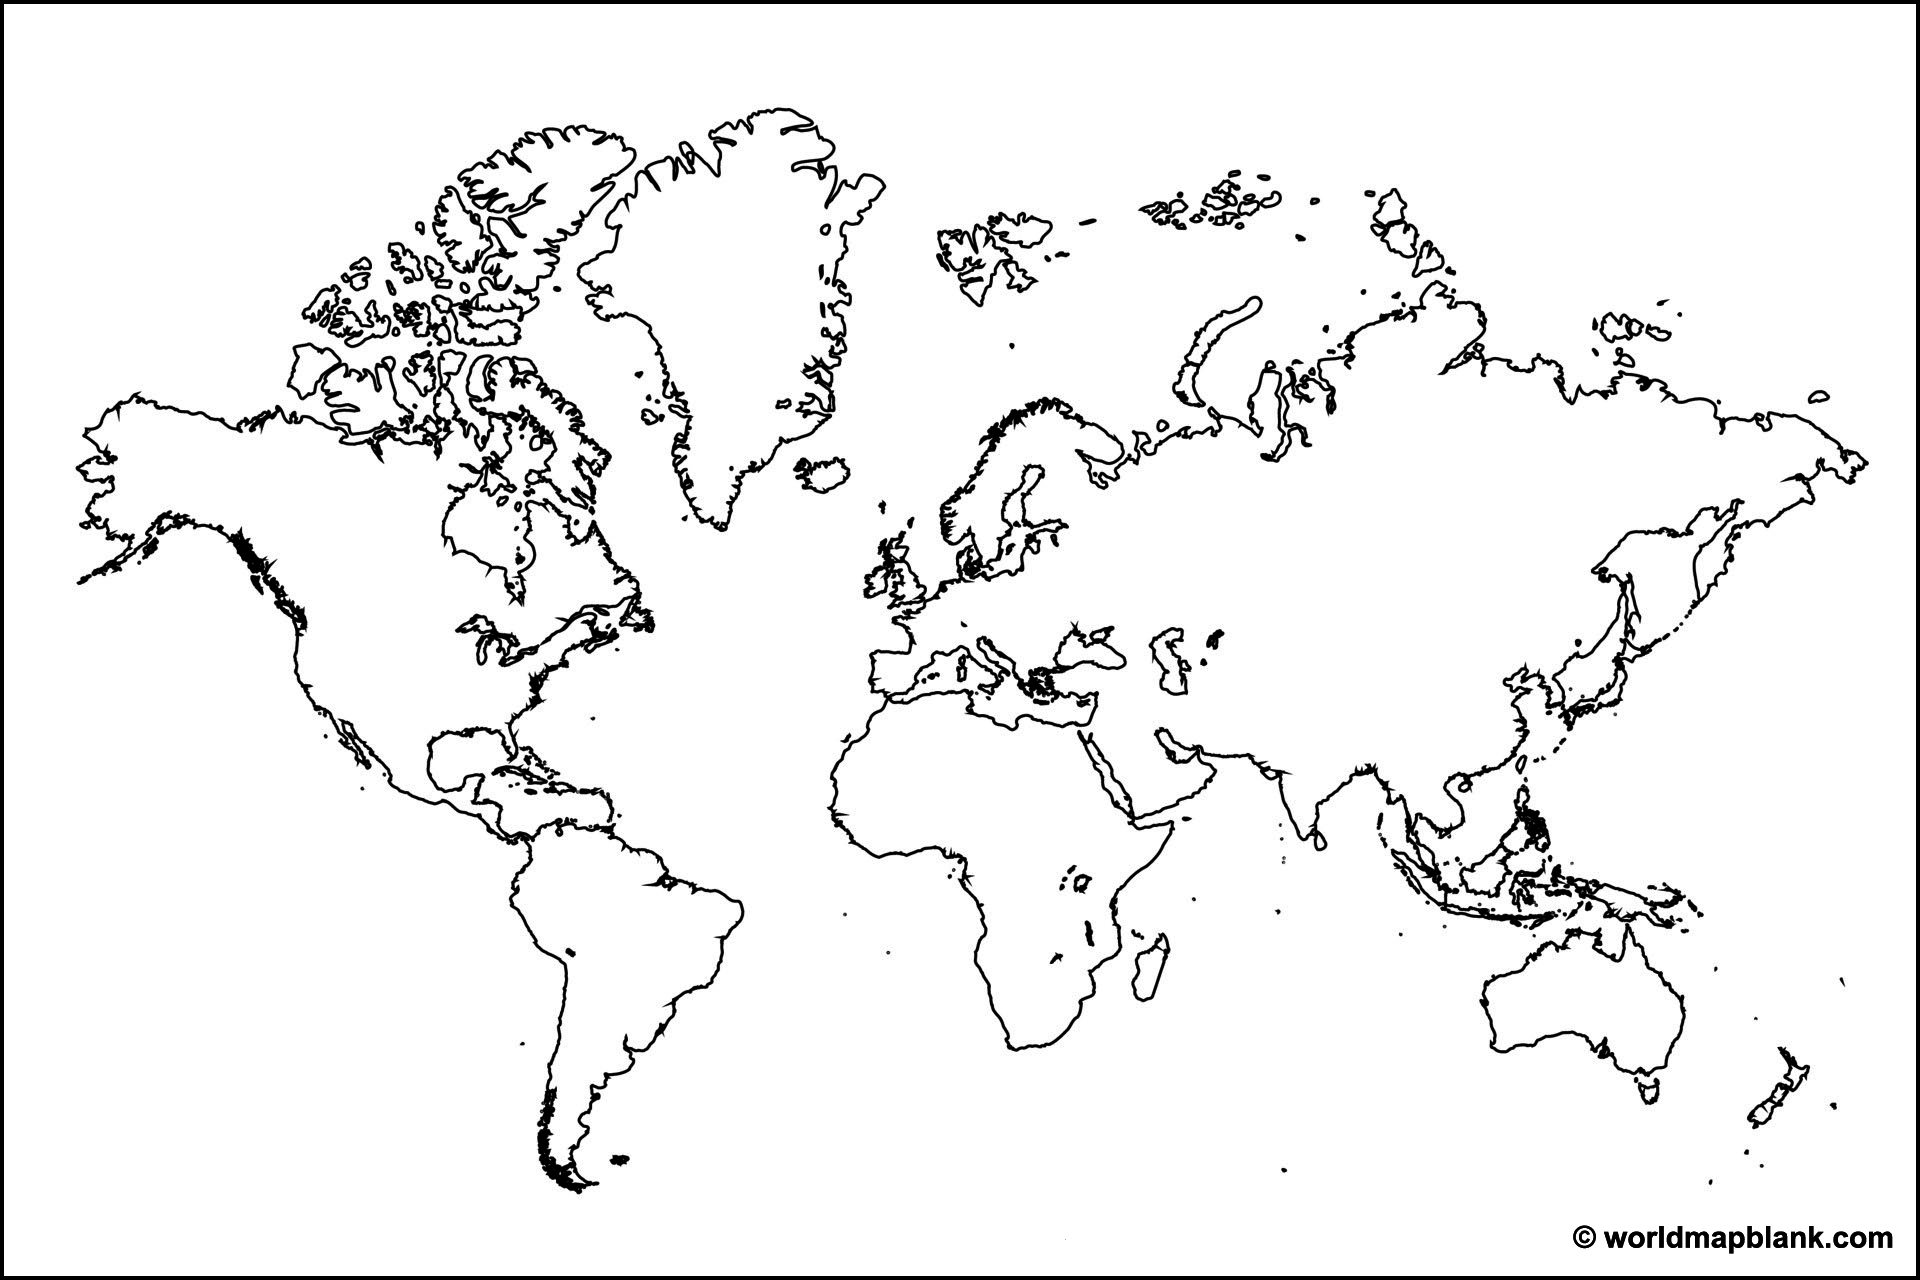 Lege contourkaart van de wereld